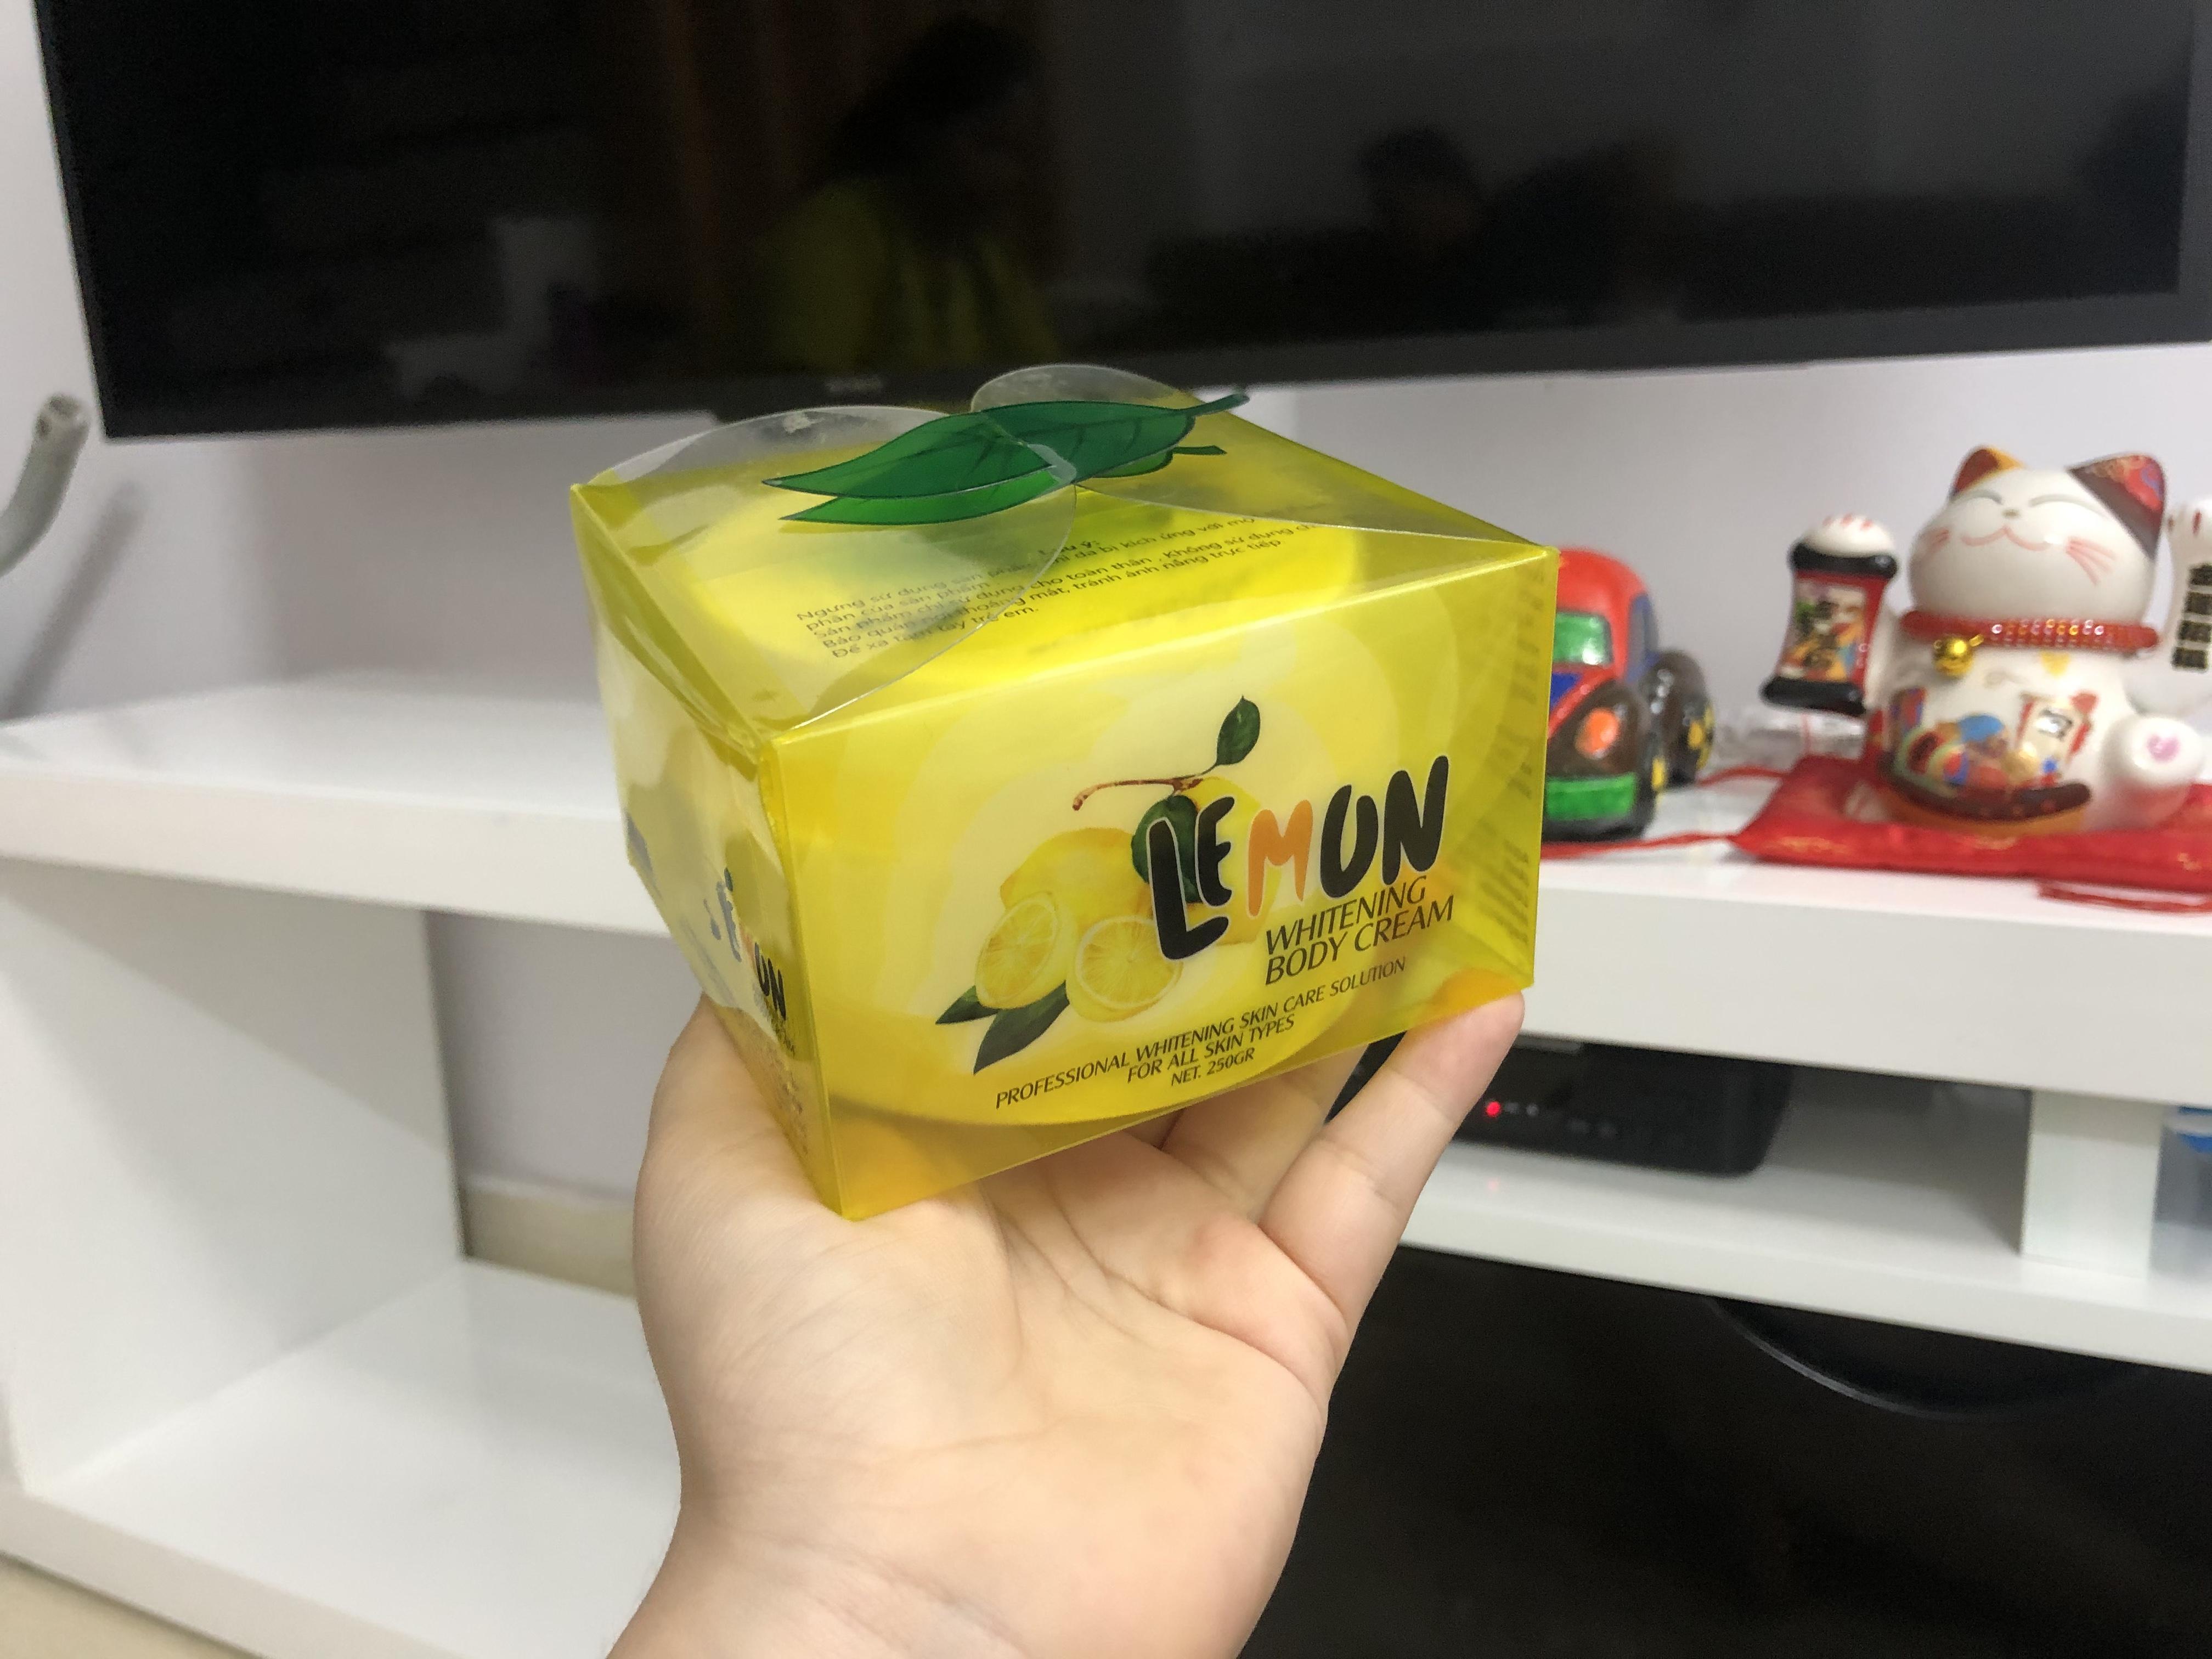 Tìm nguồn hàng sỉ kem body Lemon sỉ 165k